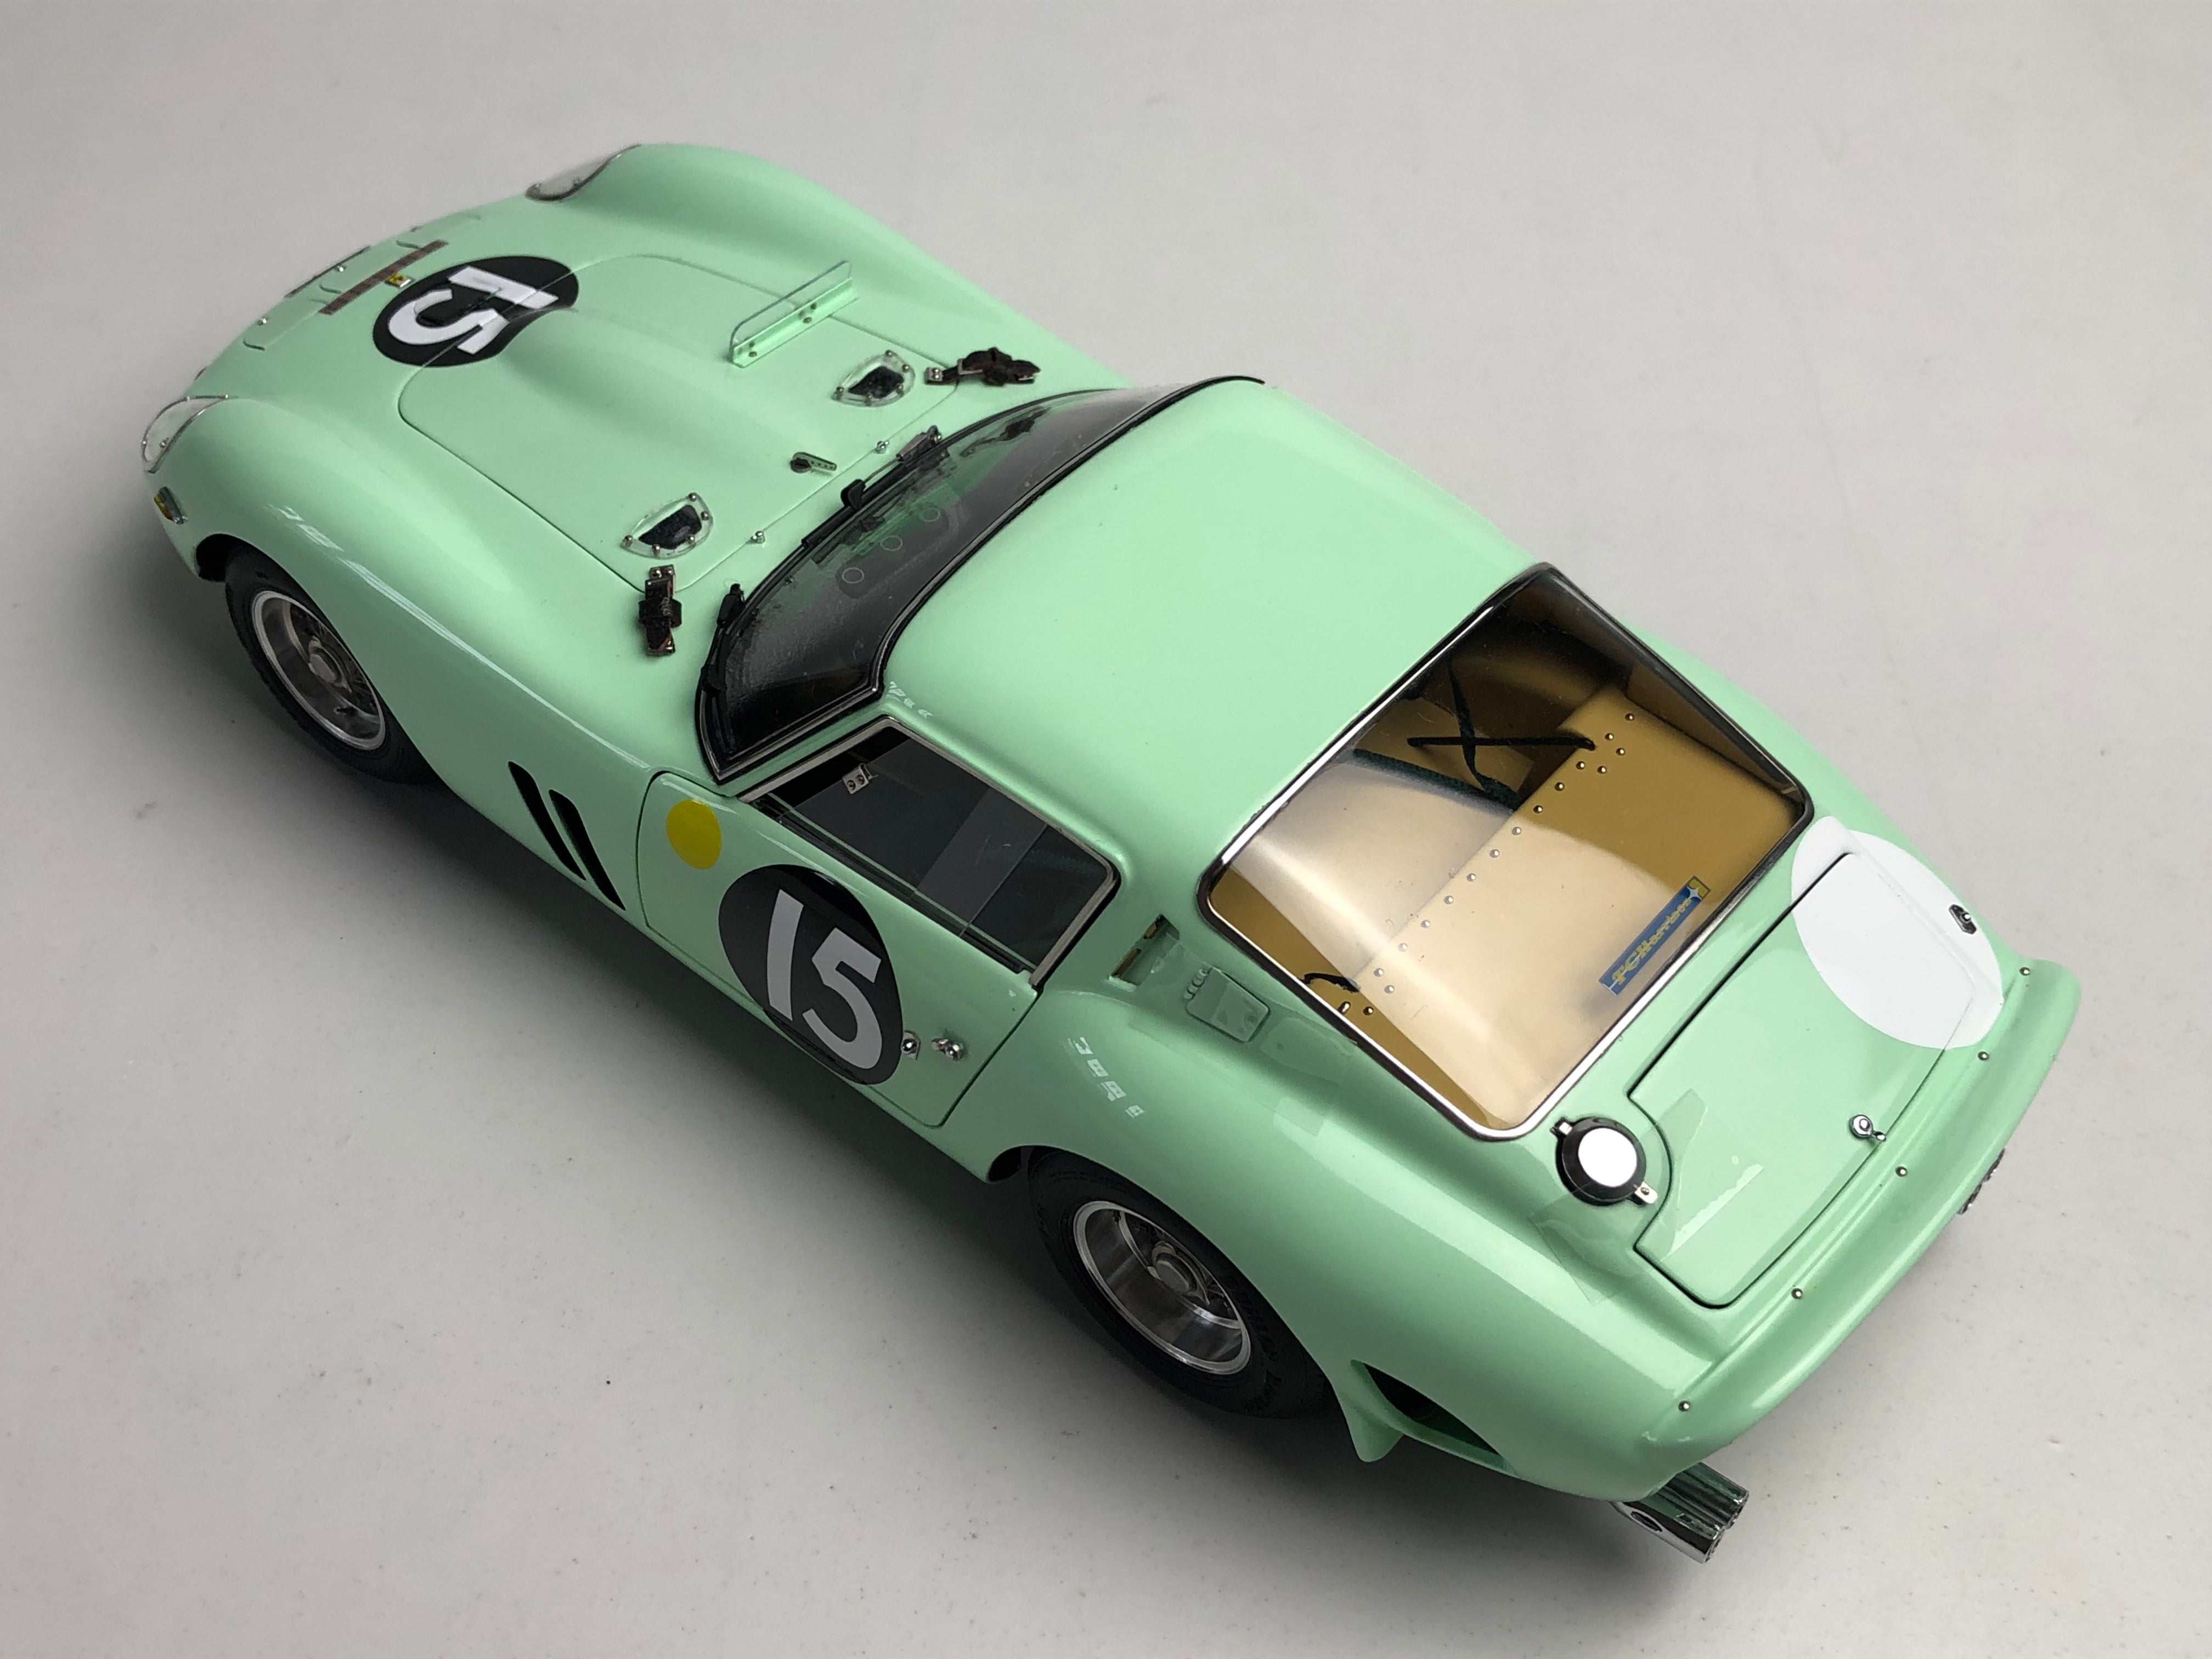 CMC 1:18 scale 1962 Ferrari 250 GTO M247 #15 chassis #3505